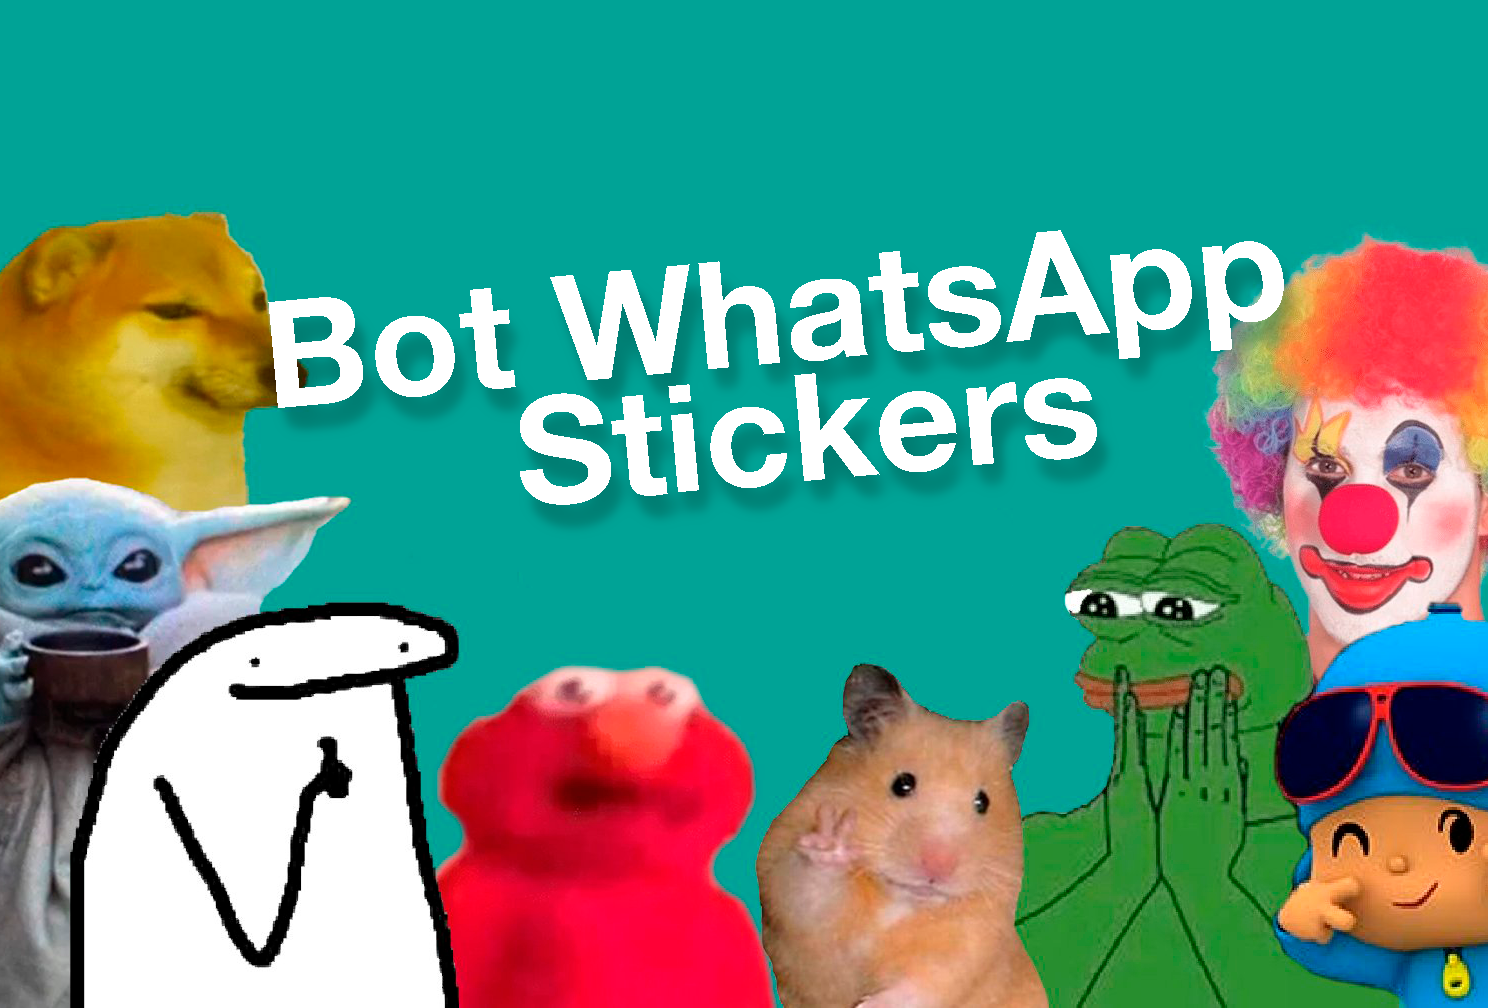 Si envías una foto a este Bot de WhatsApp la convierte en Sticker